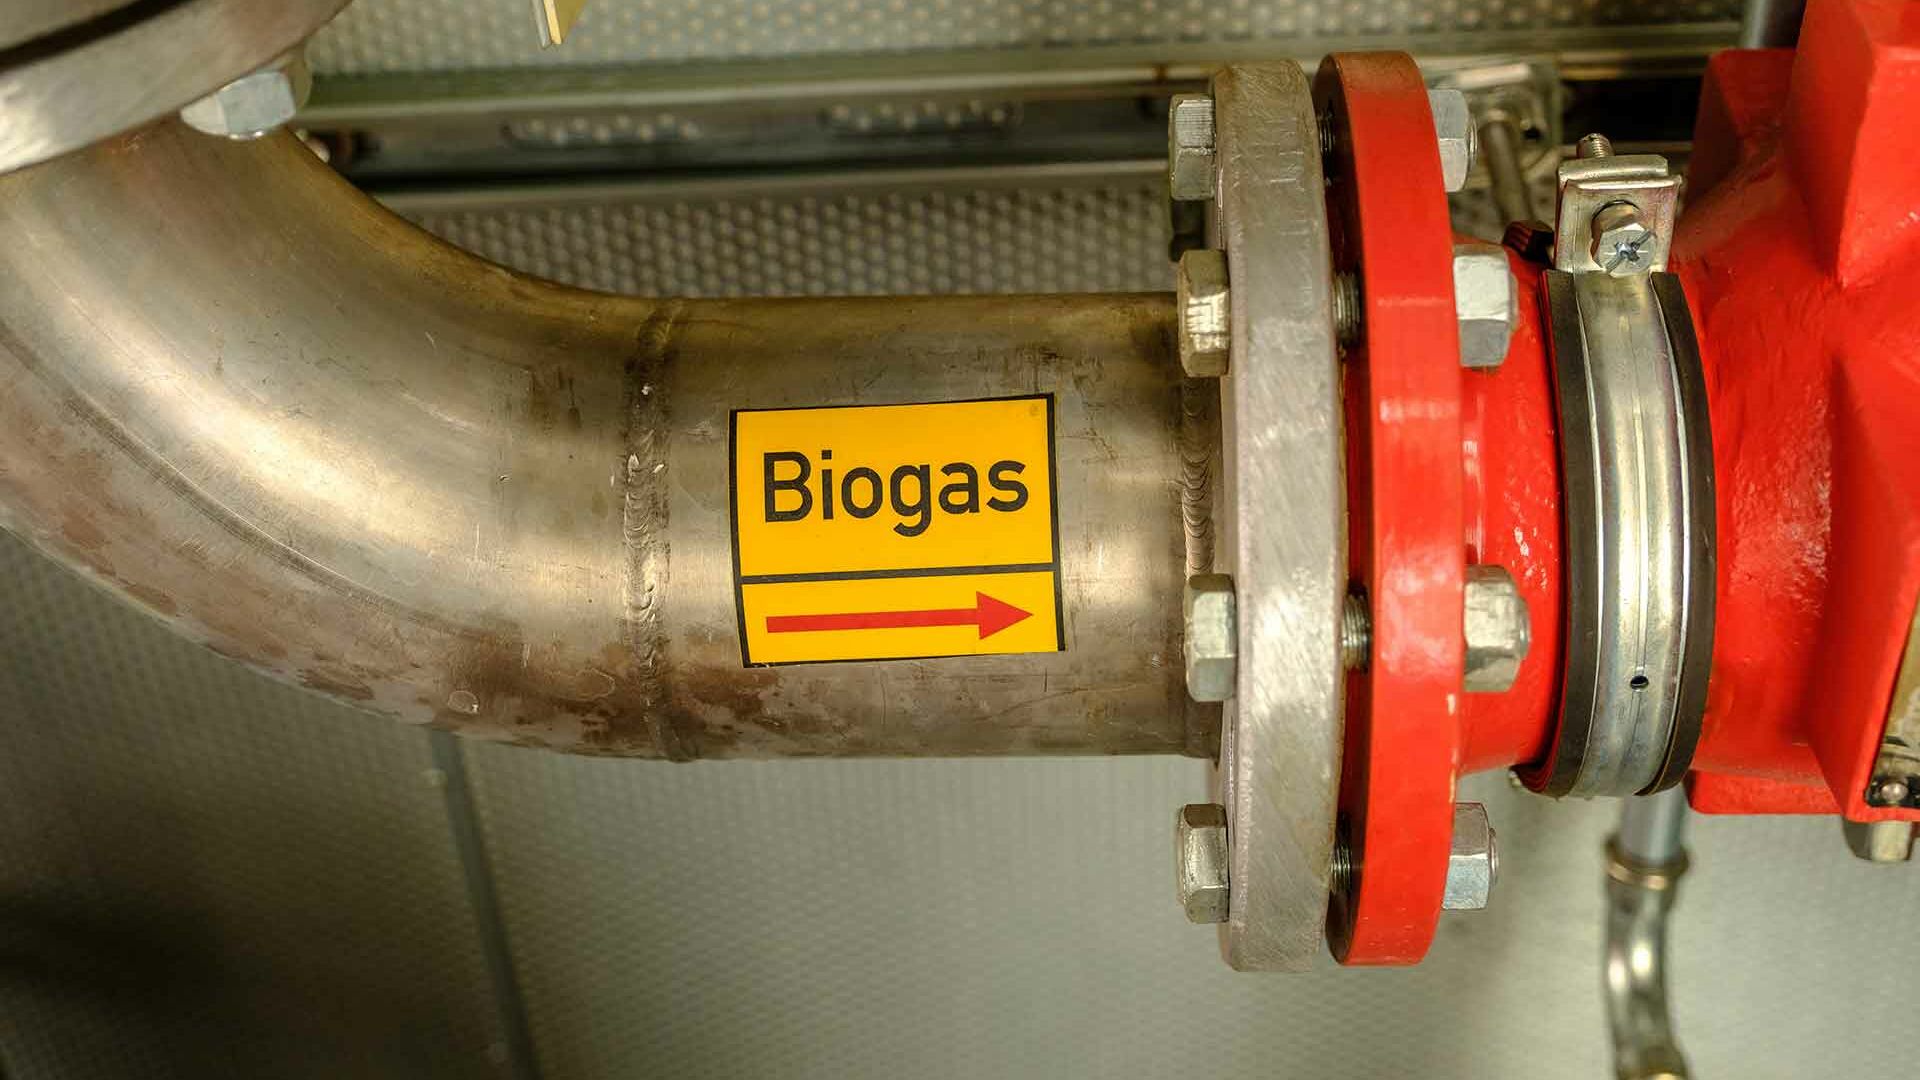 Biogasaufbereitung: Rohr-Kennzeichnung Biogas in Biogas-Anlage